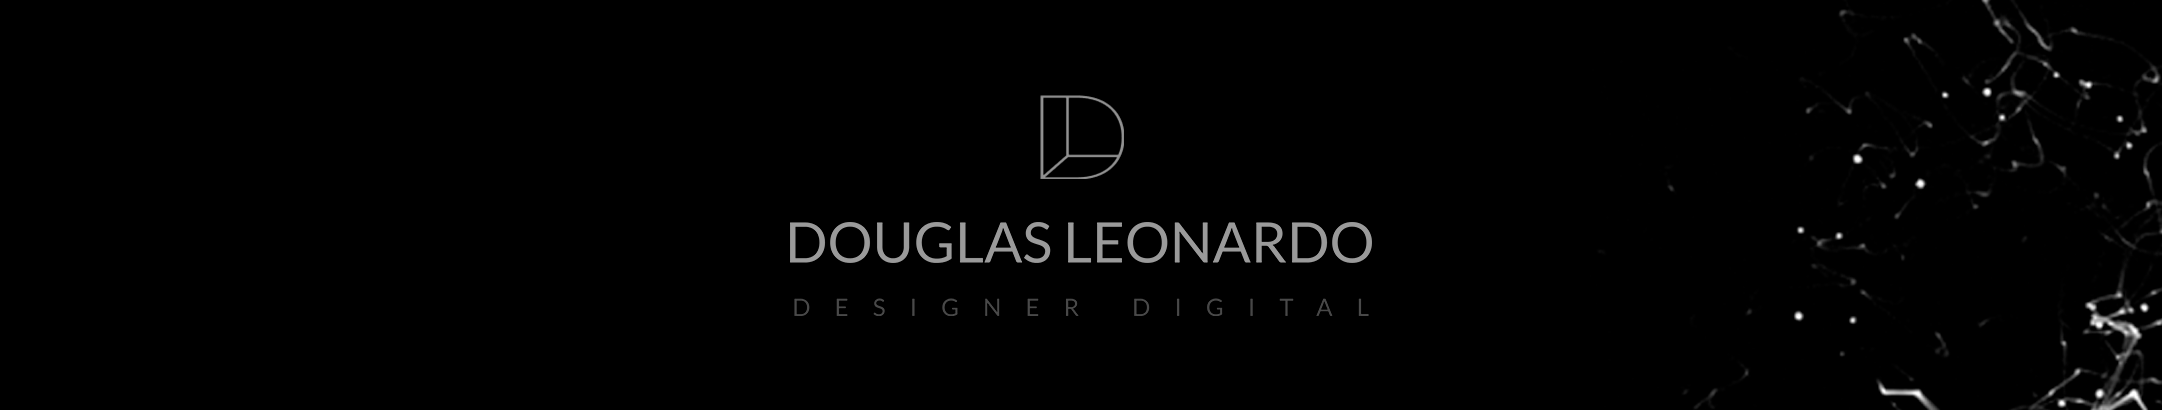 Douglas Leonardos profilbanner